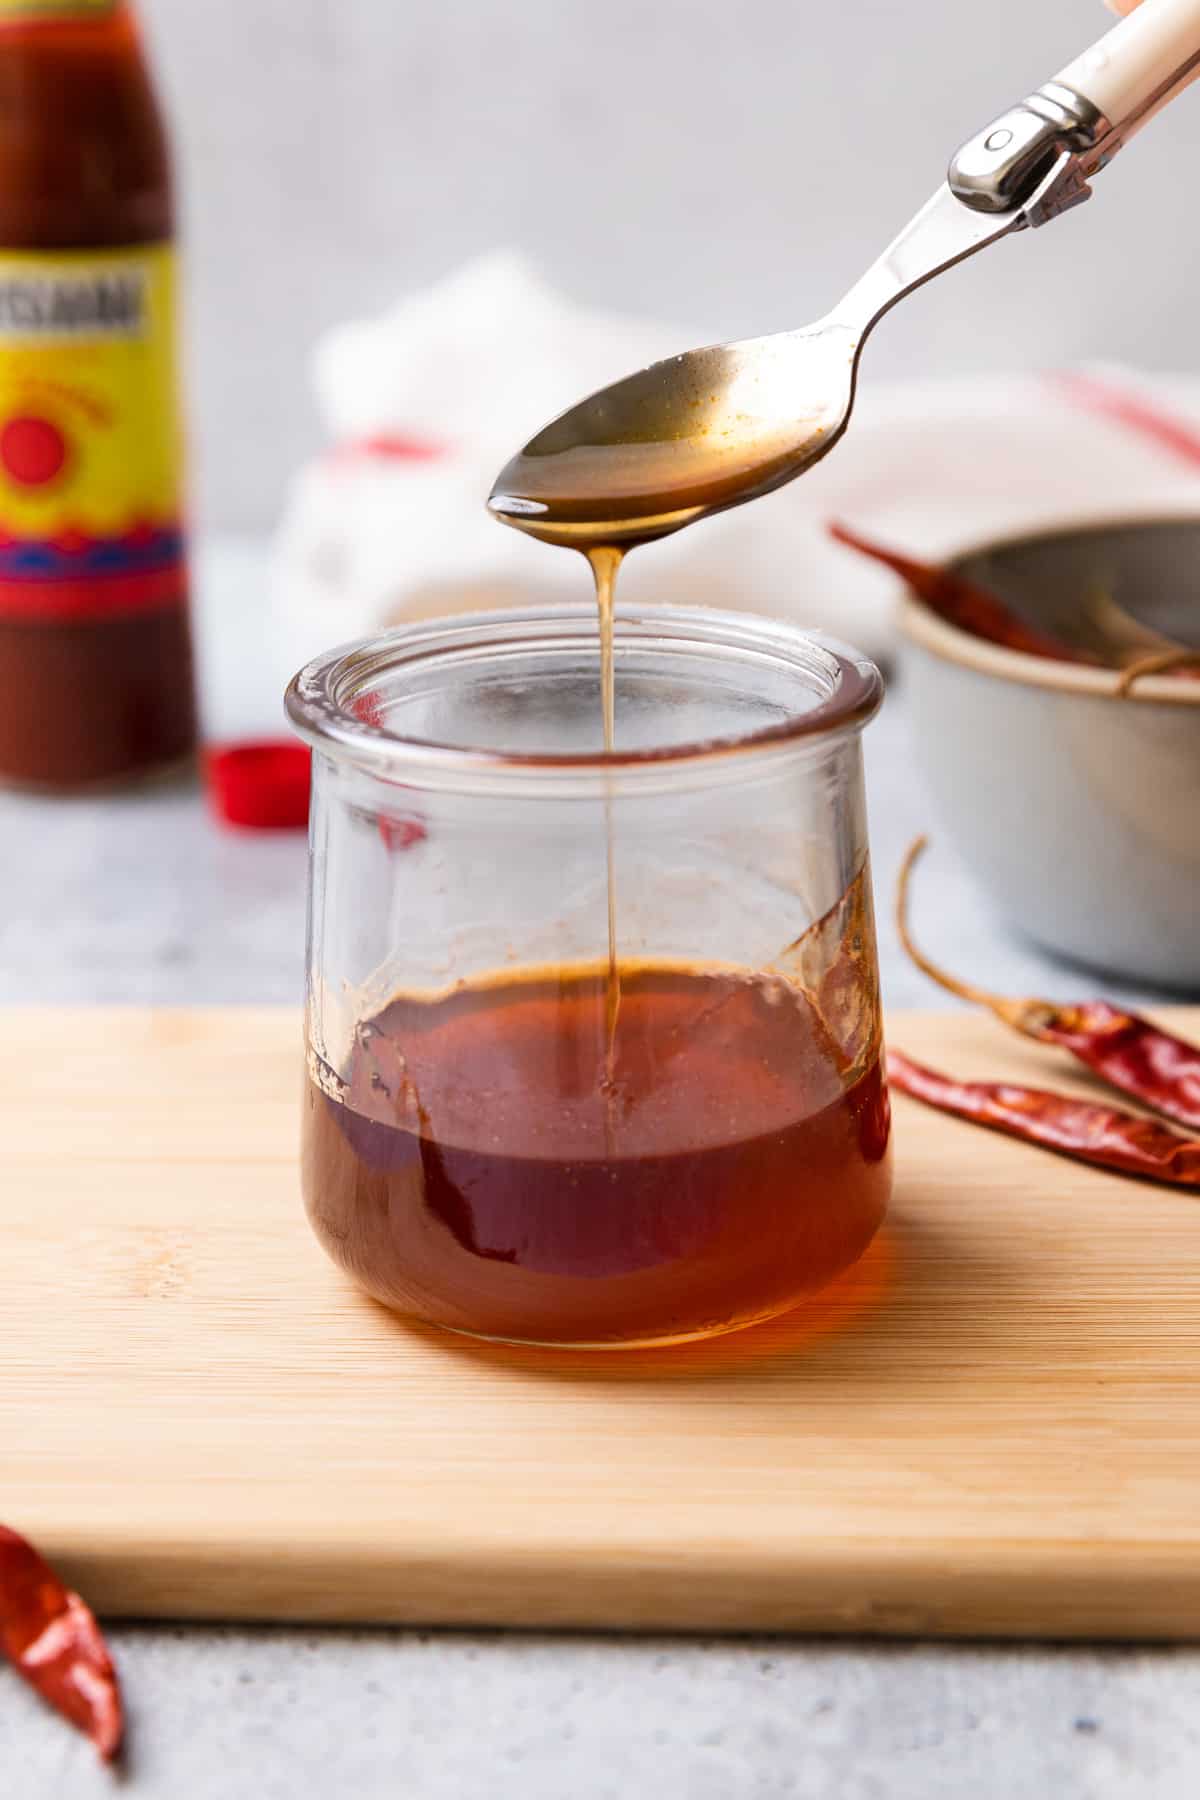 Sweet Heat with Honey - Louisiana Hot Sauce